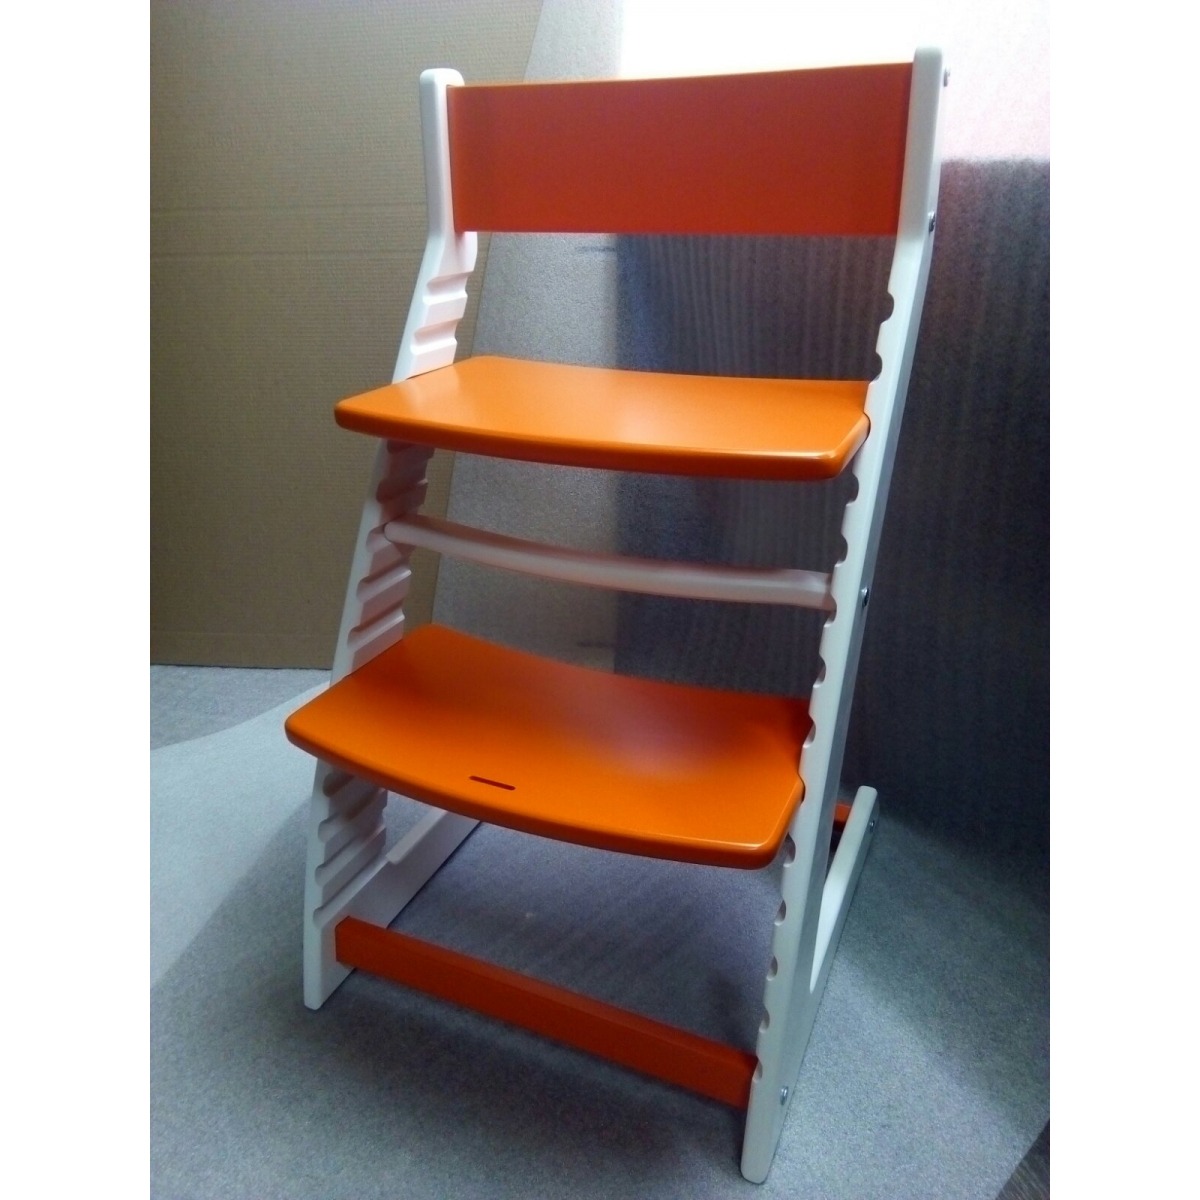 Детский регулируемый стул ВАСИЛЁК slim ВН-21Д (бело-оранжевый)